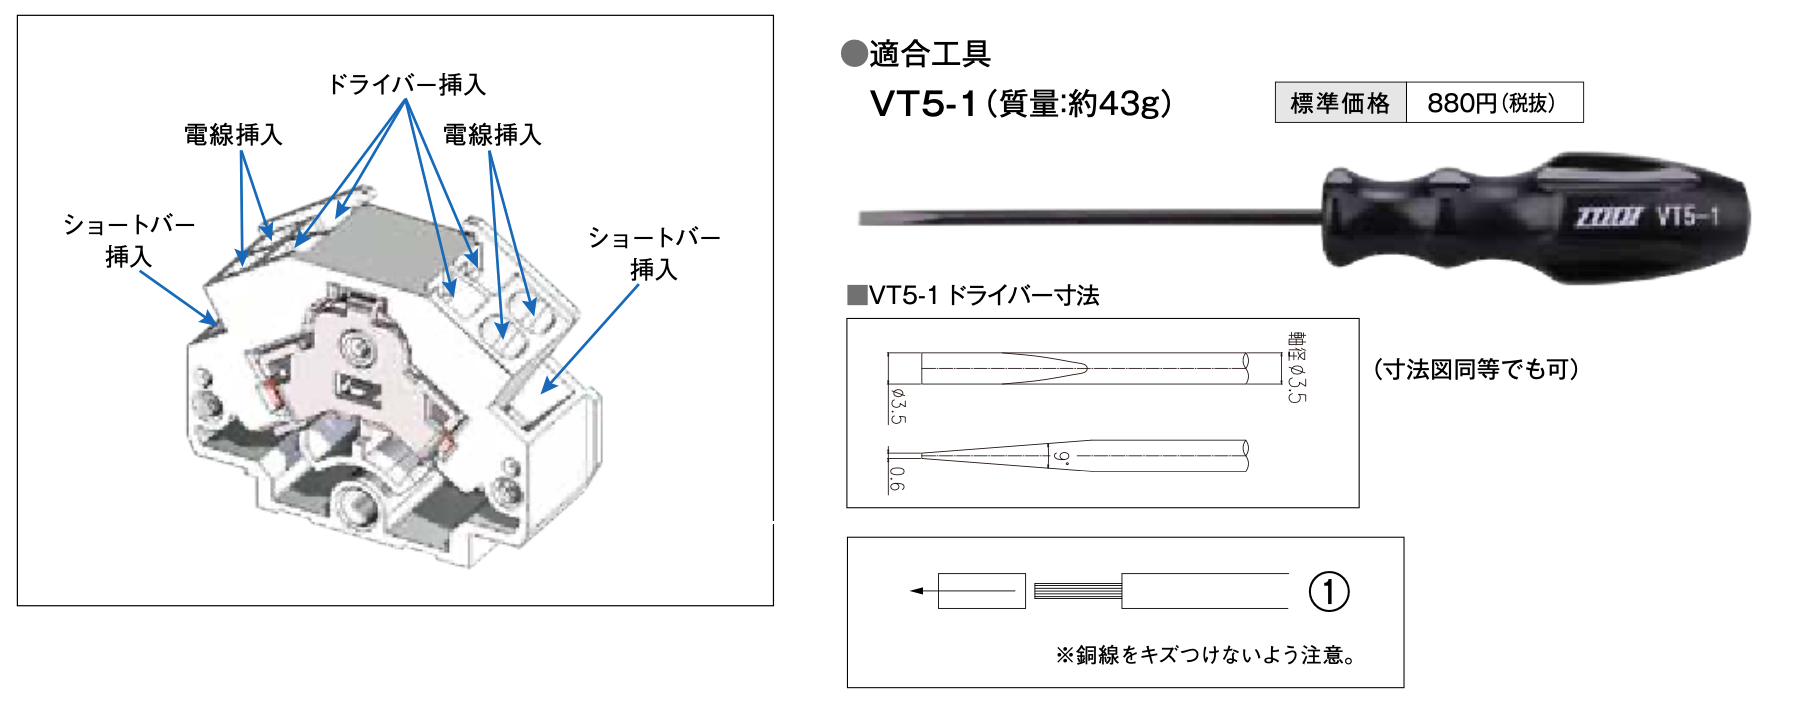 小型スプリングロック式端子台 VT-5Mシリーズ – 協立電業株式会社